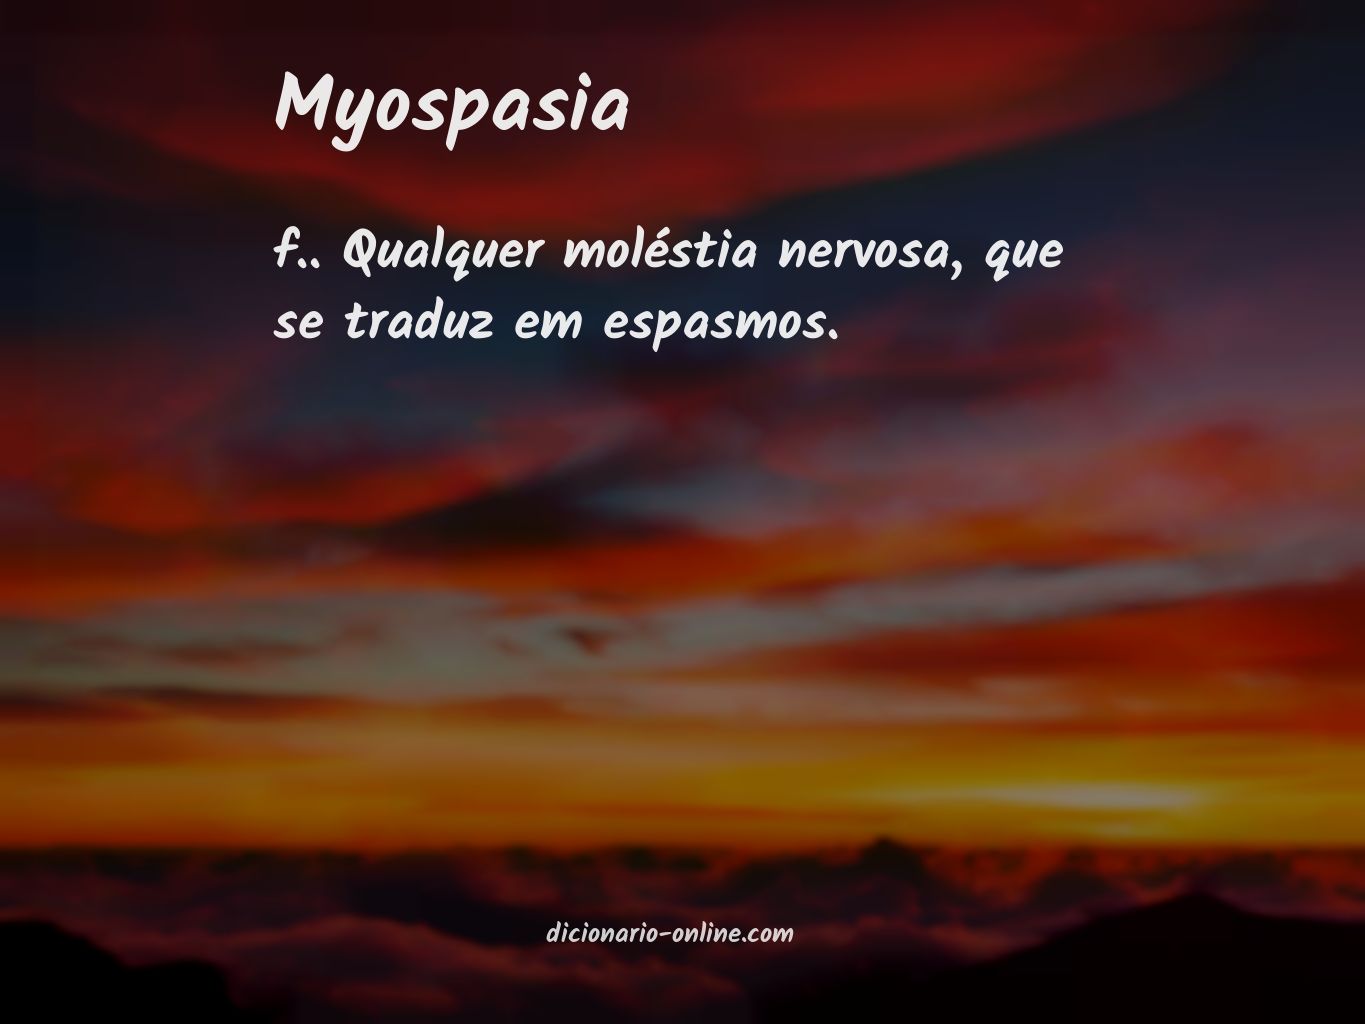 Significado de myospasia